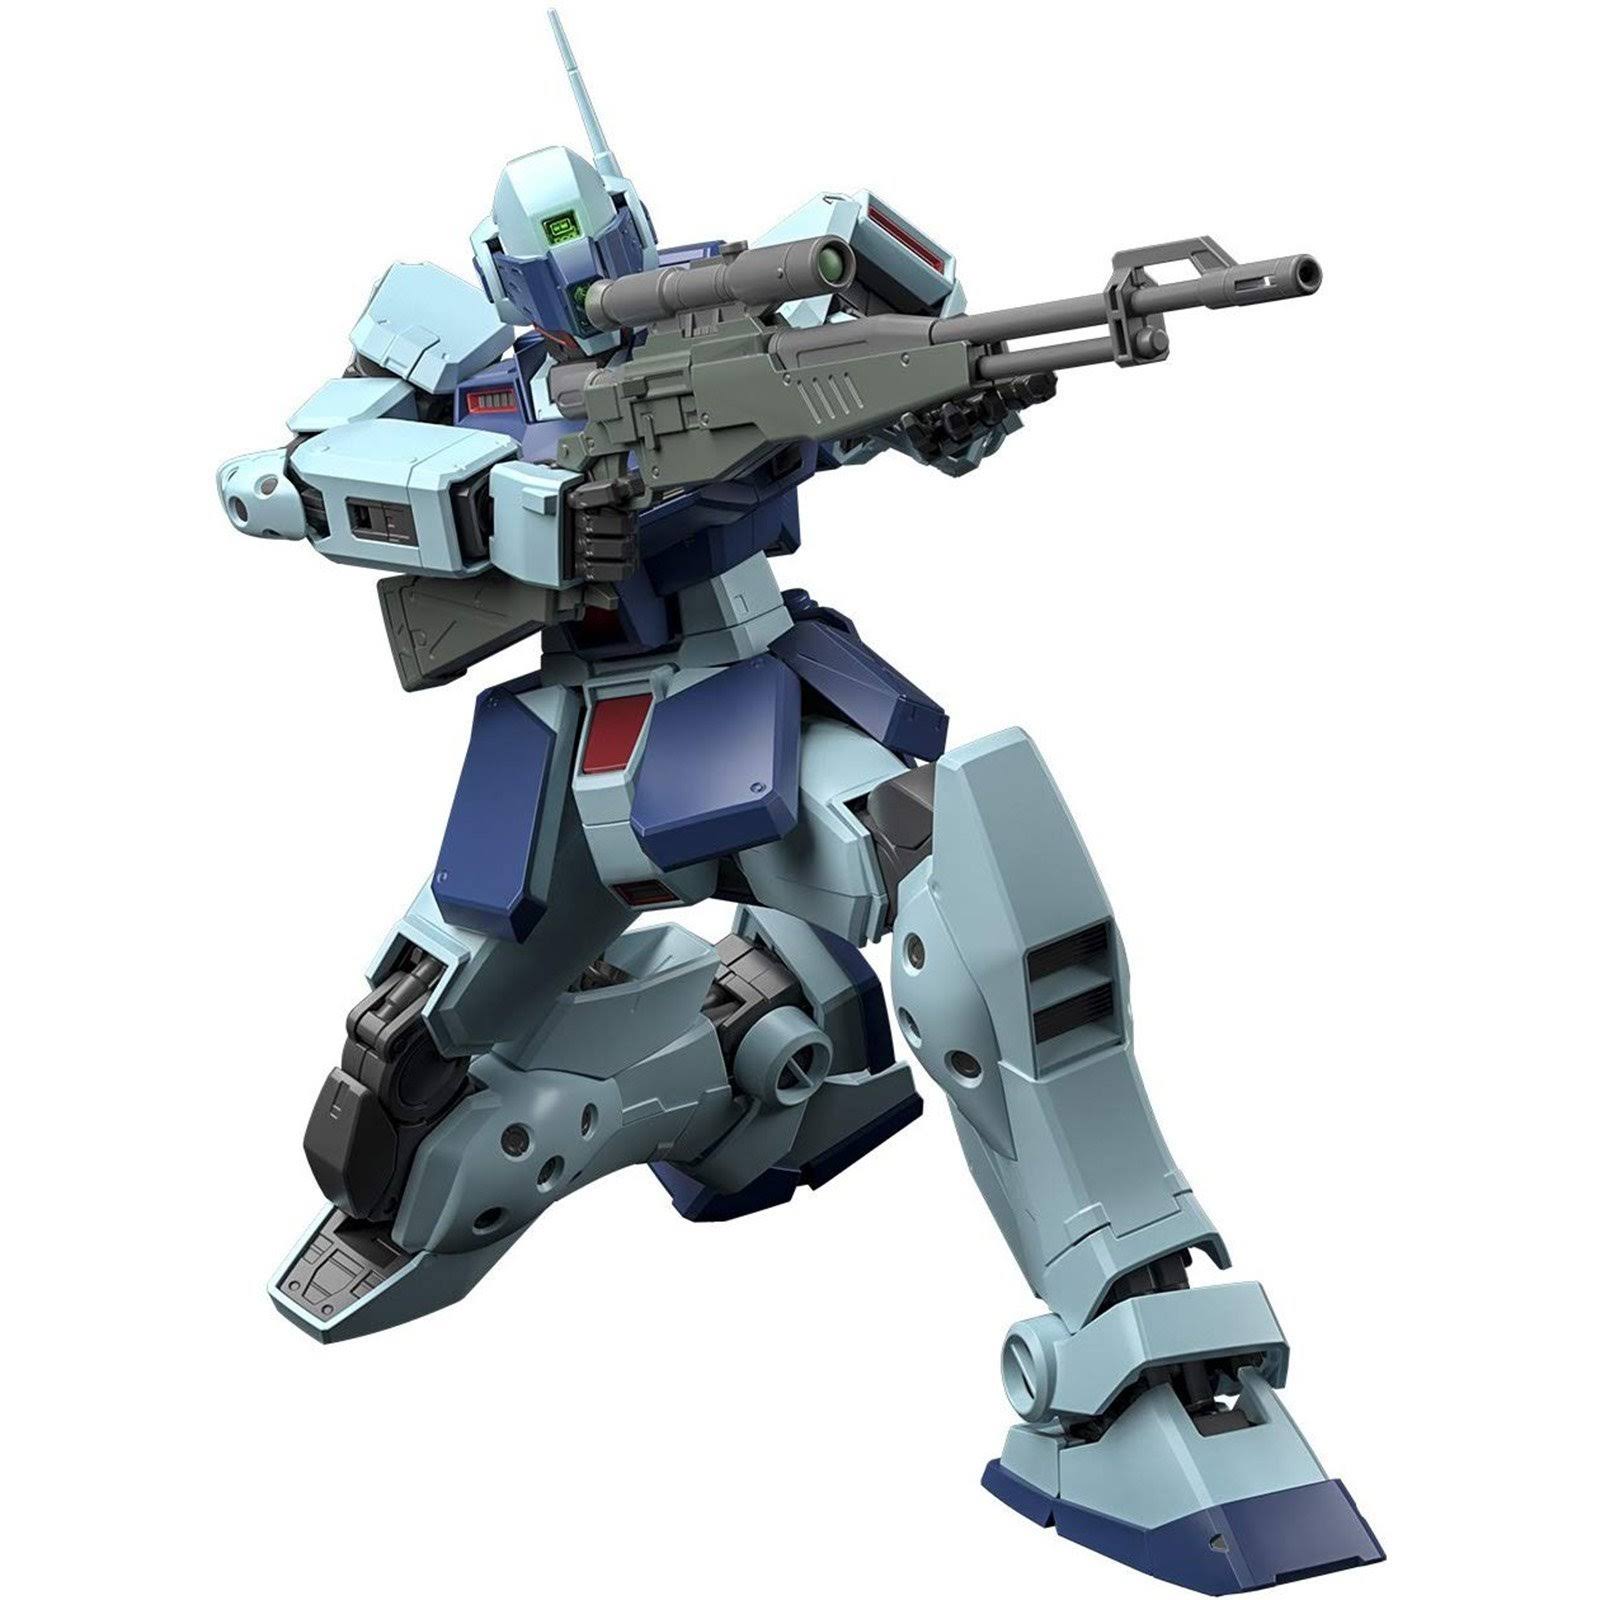 Bandai Gundam Mg Sniper II Mobile Suit Kit - 1/100 Scale